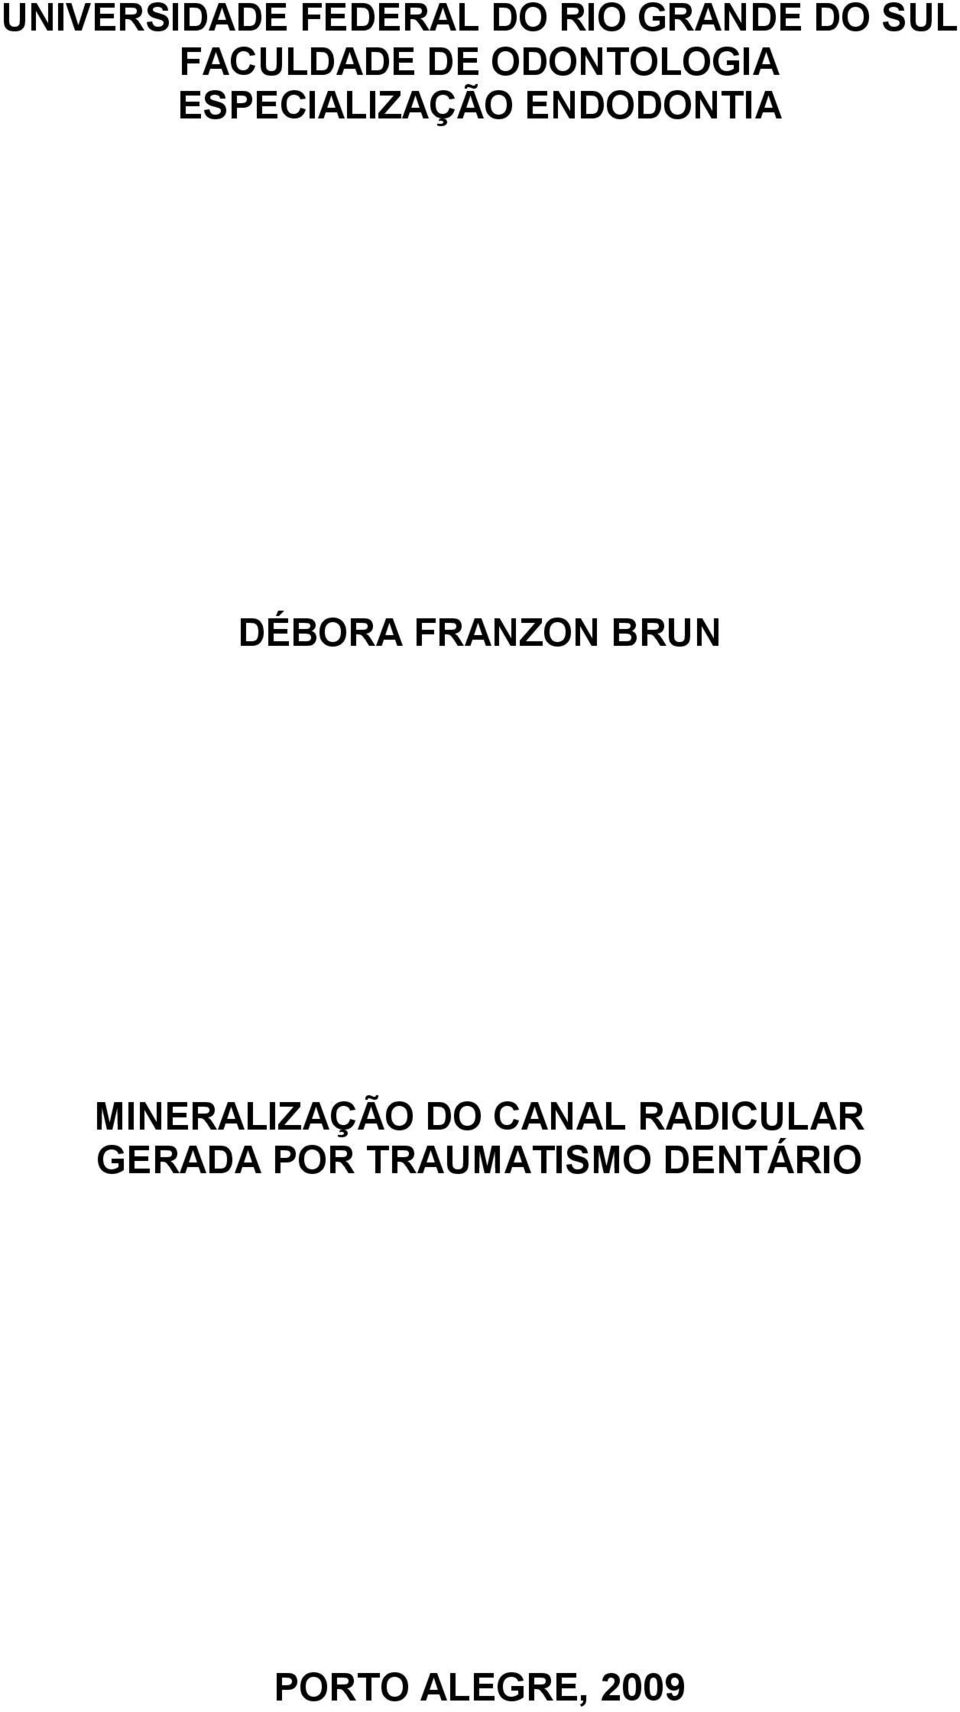 ENDODONTIA DÉBORA FRANZON BRUN MINERALIZAÇÃO DO